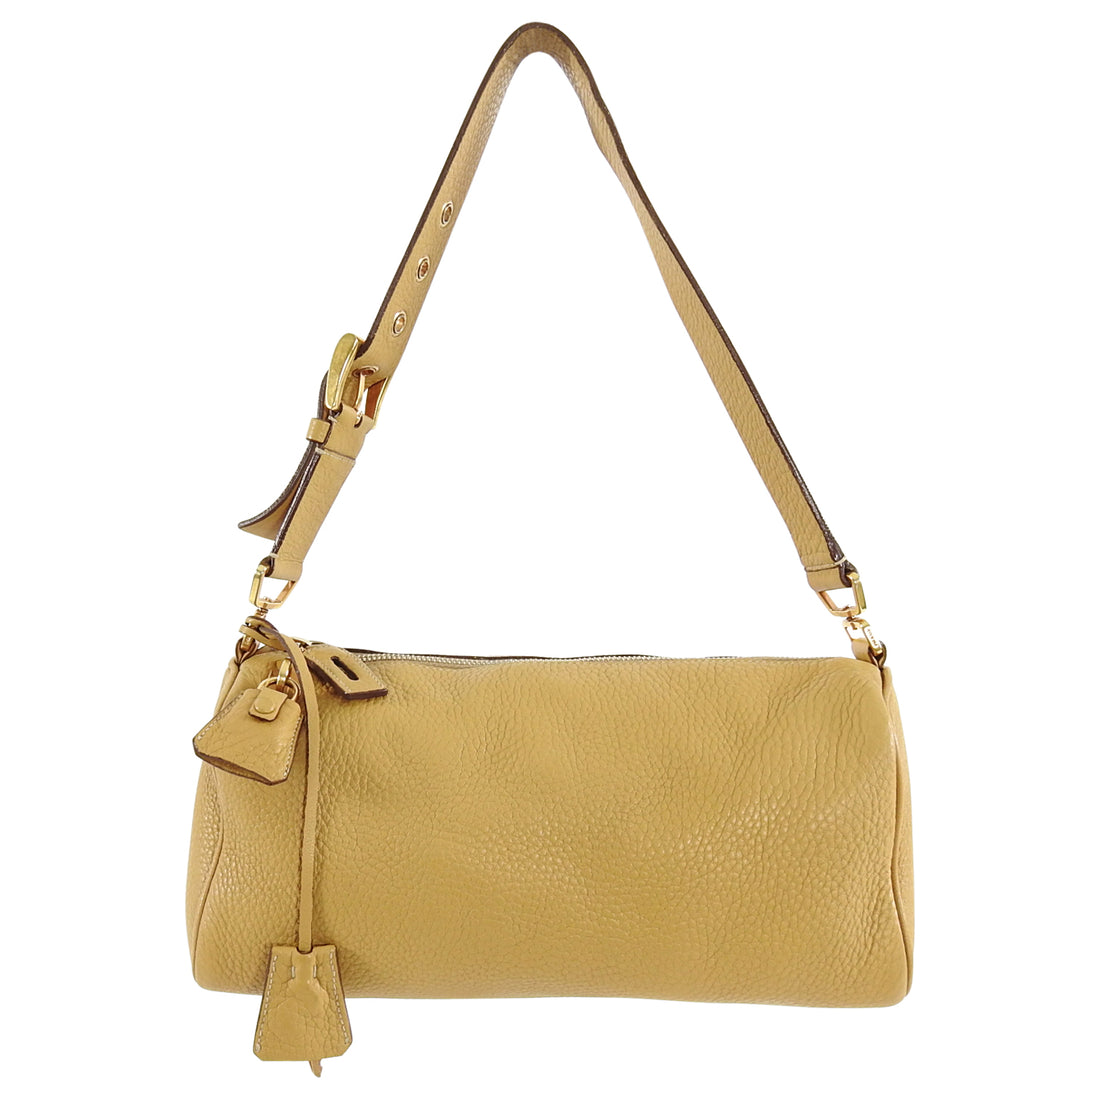 Prada Light Tan Leather Small Lock Shoulder Bag – I MISS YOU VINTAGE